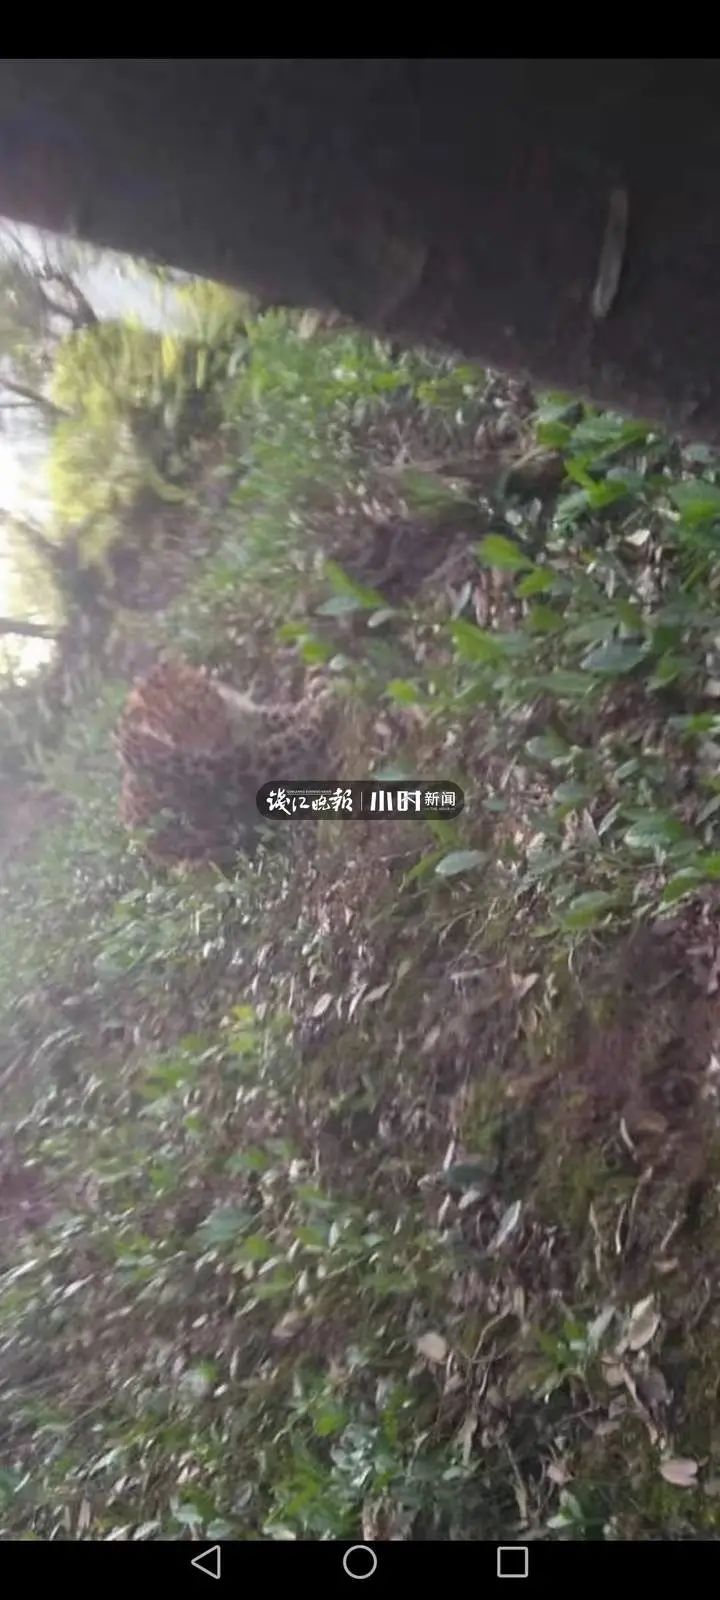 杭州野生动物世界三只金钱豹外逃 已追回一只